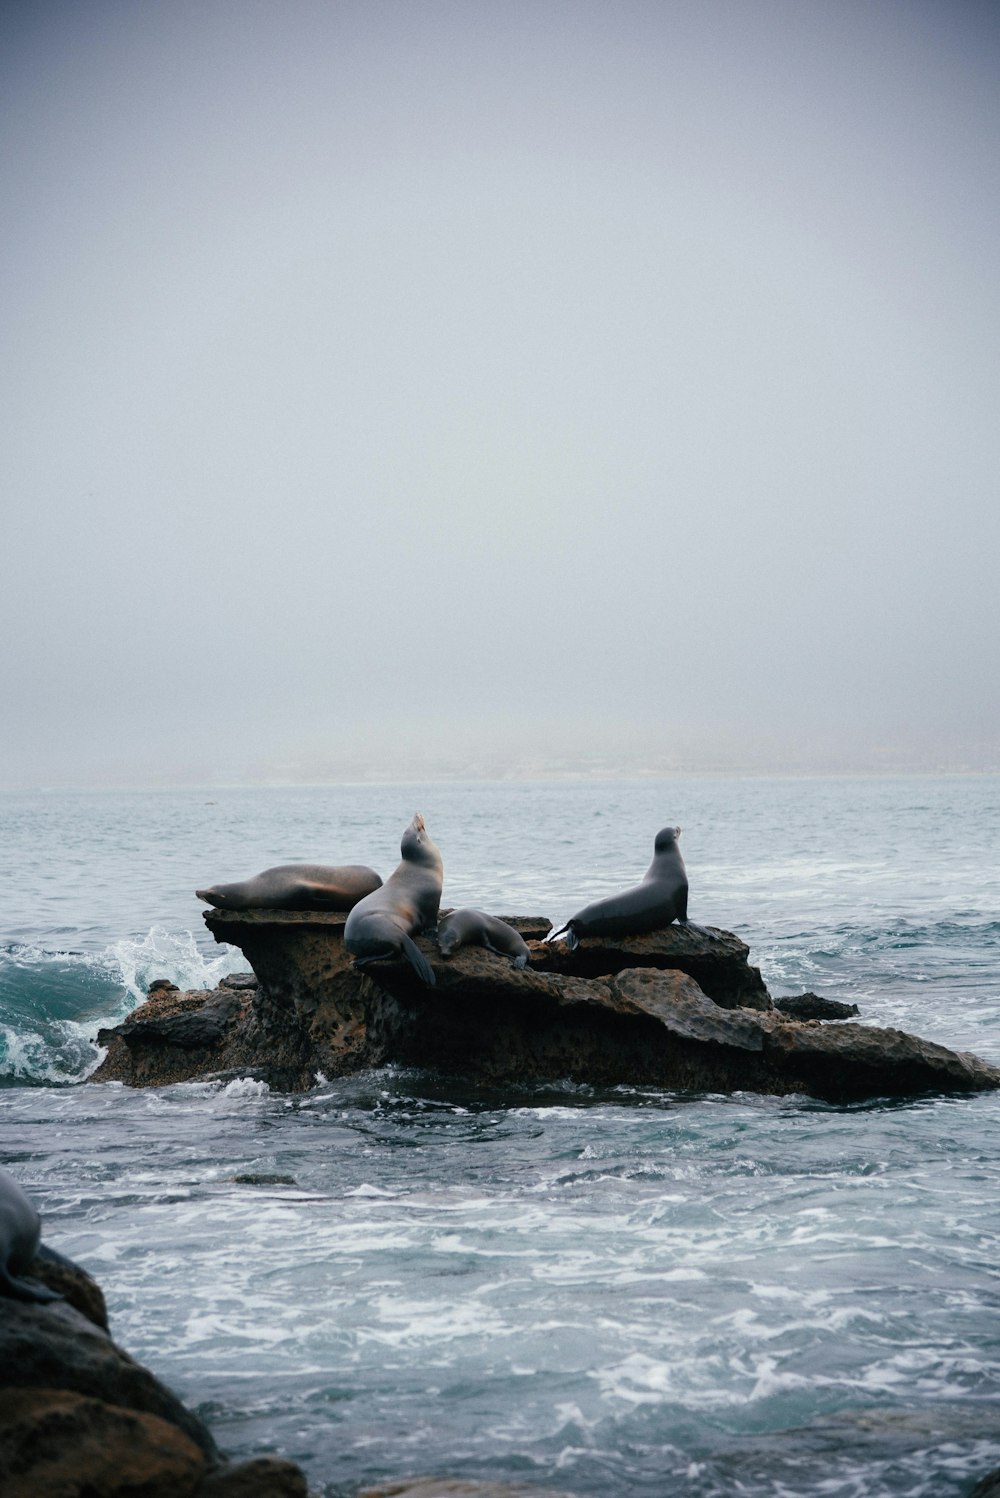 바다의 바위에 앉아 있는 세 마리의 갈매기